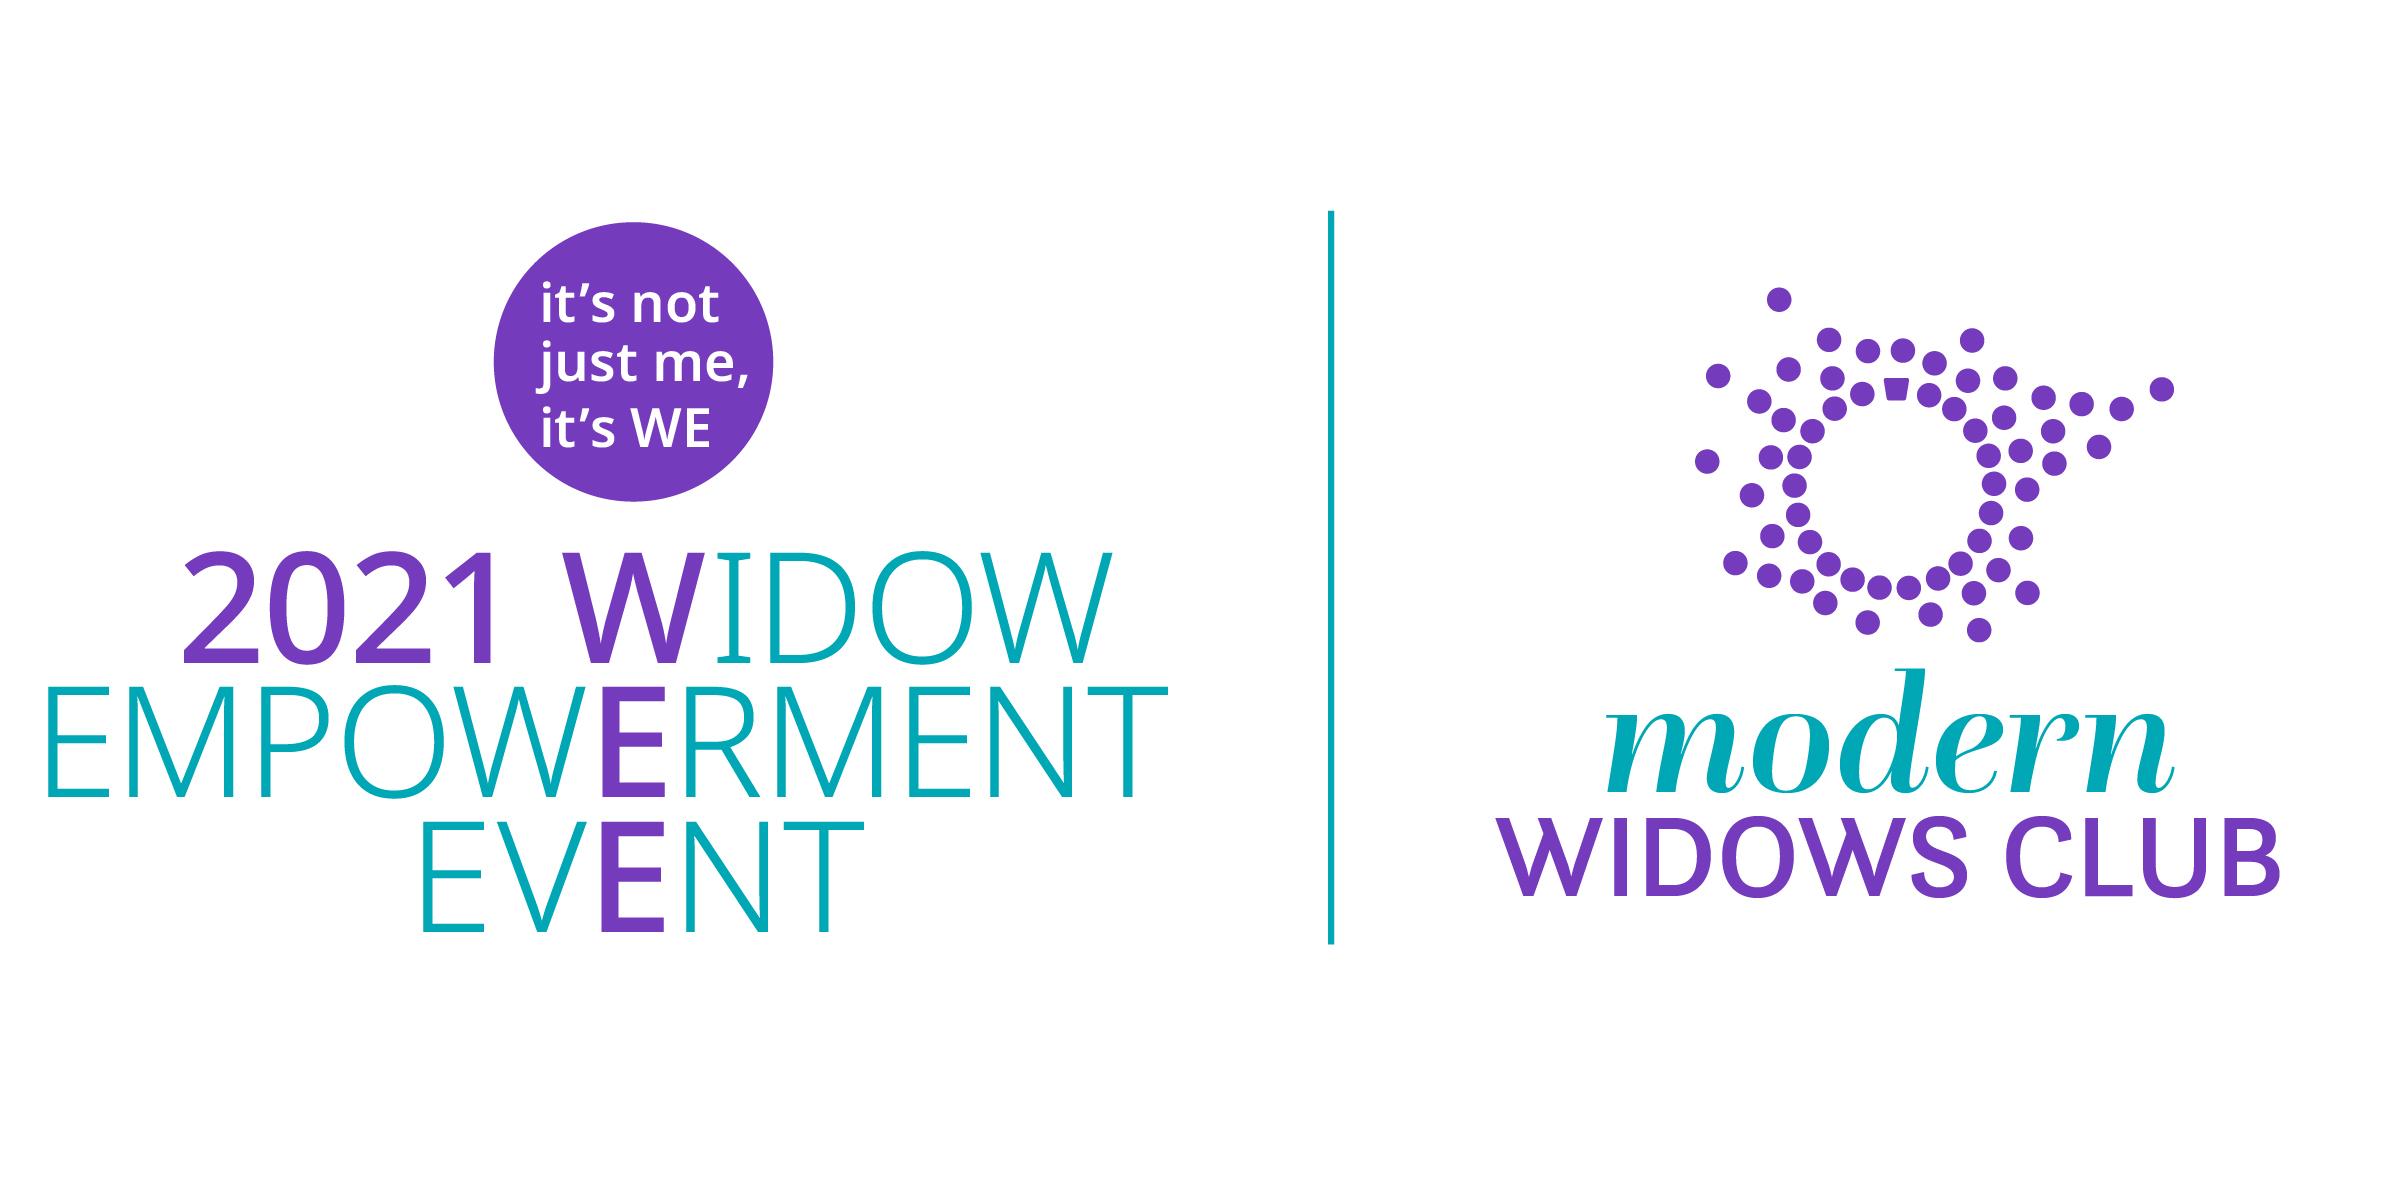 Widow Empowerment Event